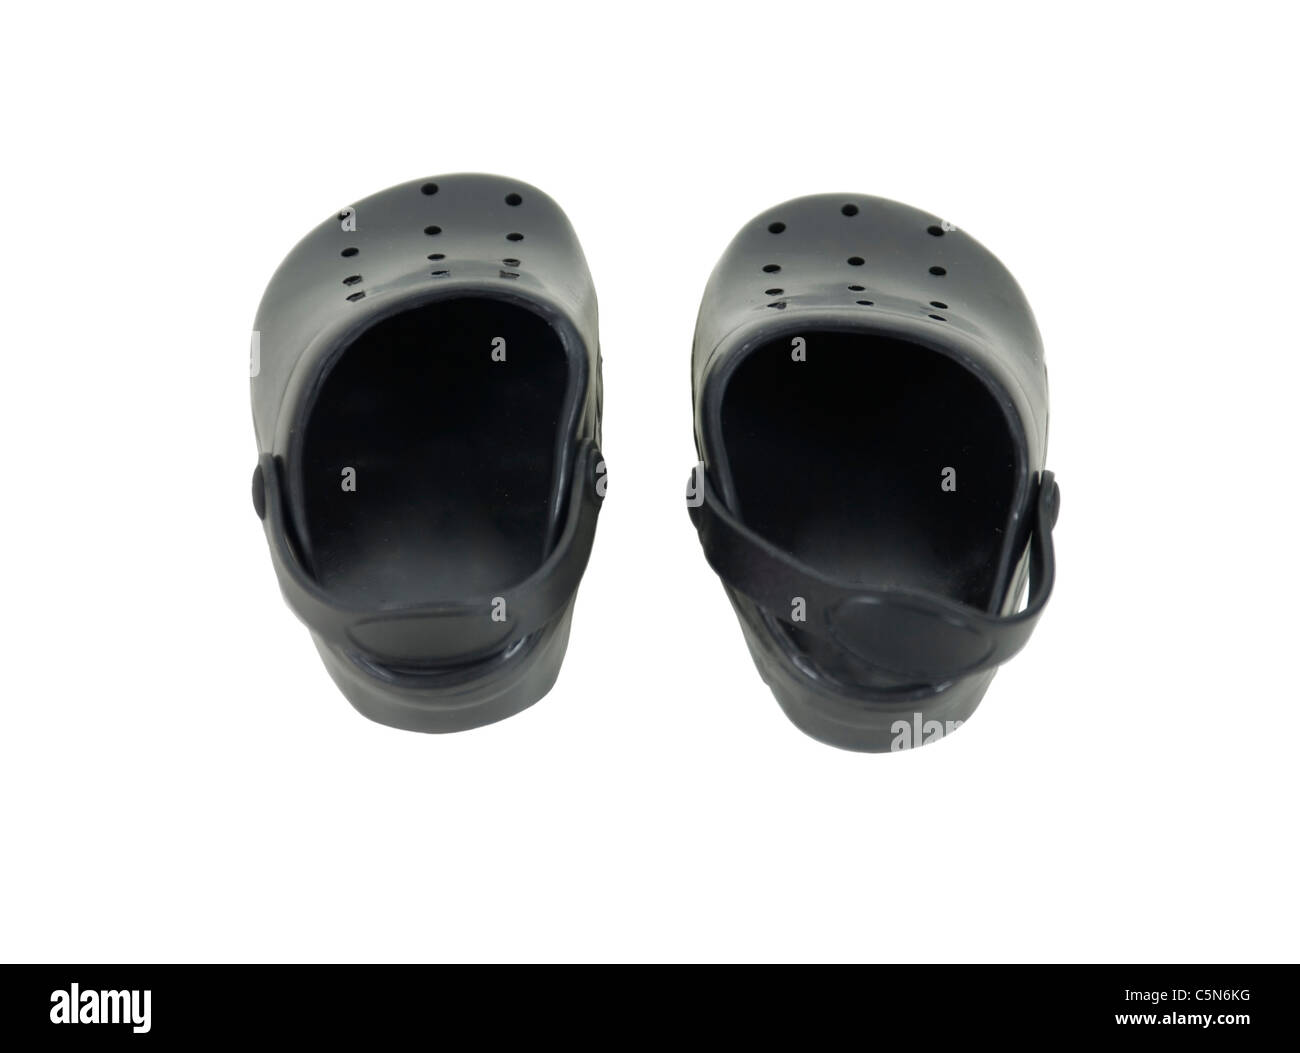 Kautschuk schwarz clogs mit Riemchen ideal für Wasser Fuß Schuhe - Pfad  enthalten Stockfotografie - Alamy